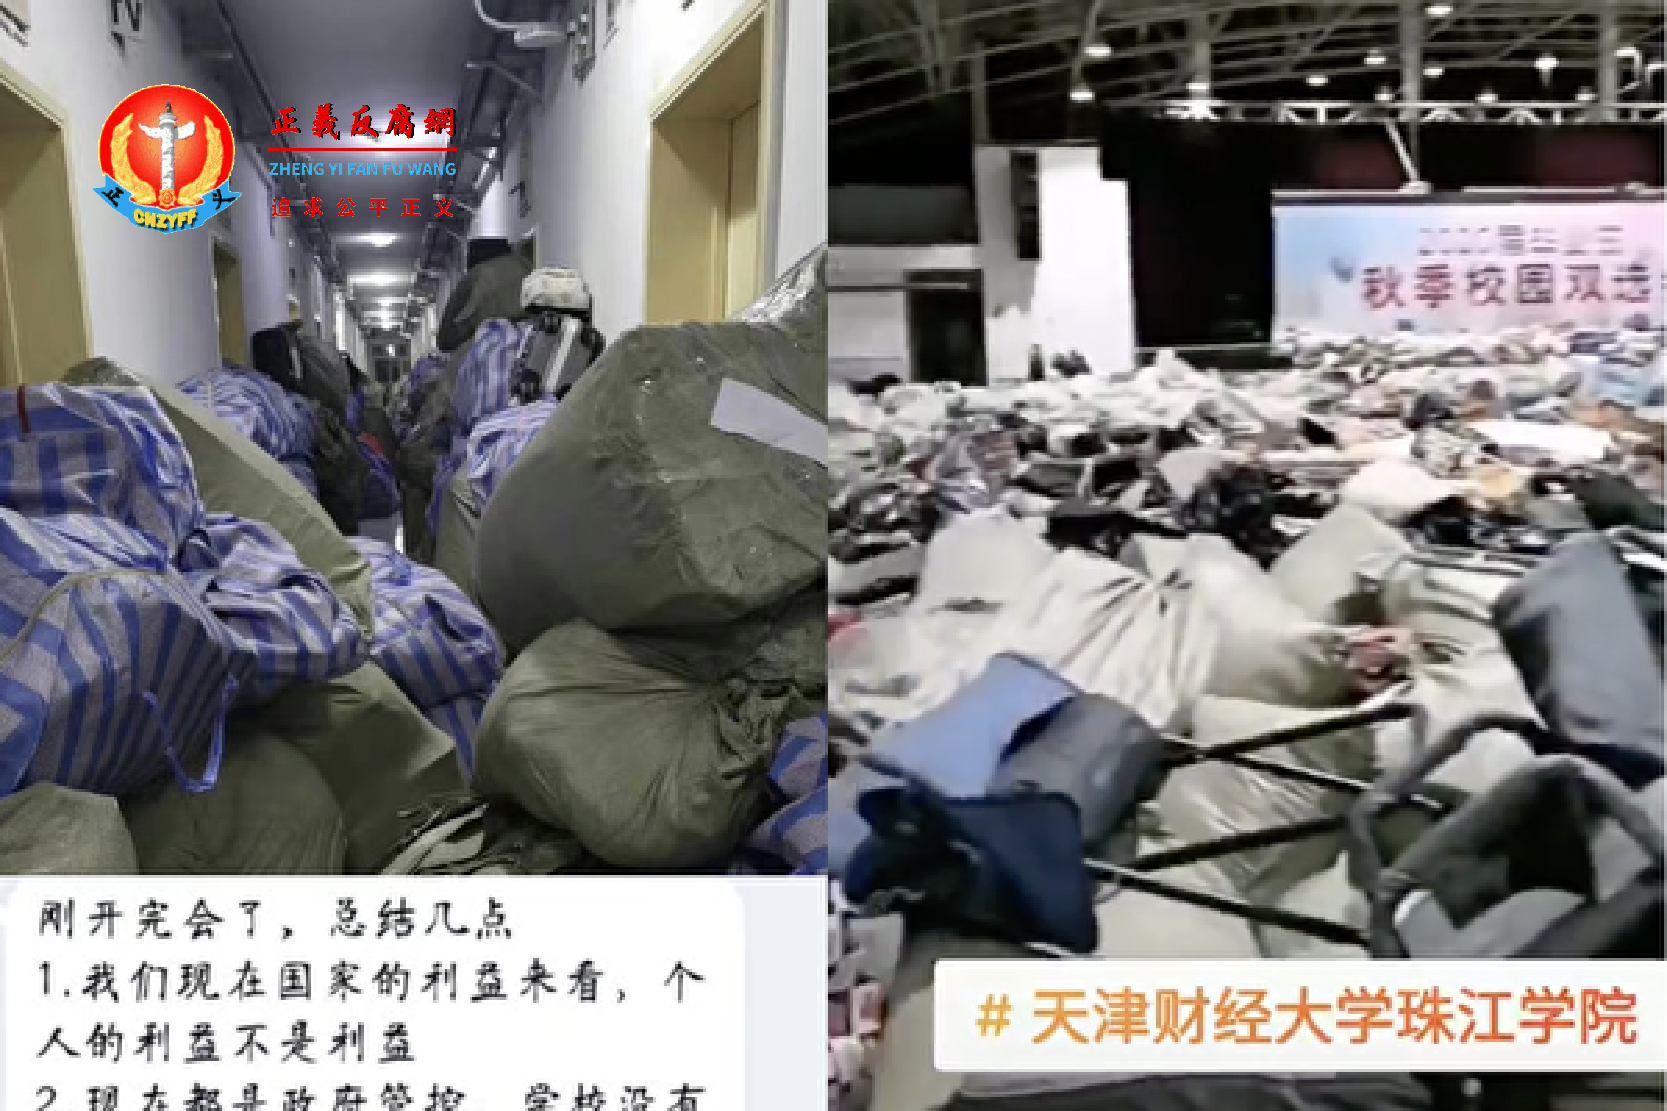 天津高校宿舍变隔离点，学生们的私人物品遭到暴力扔抛。.png